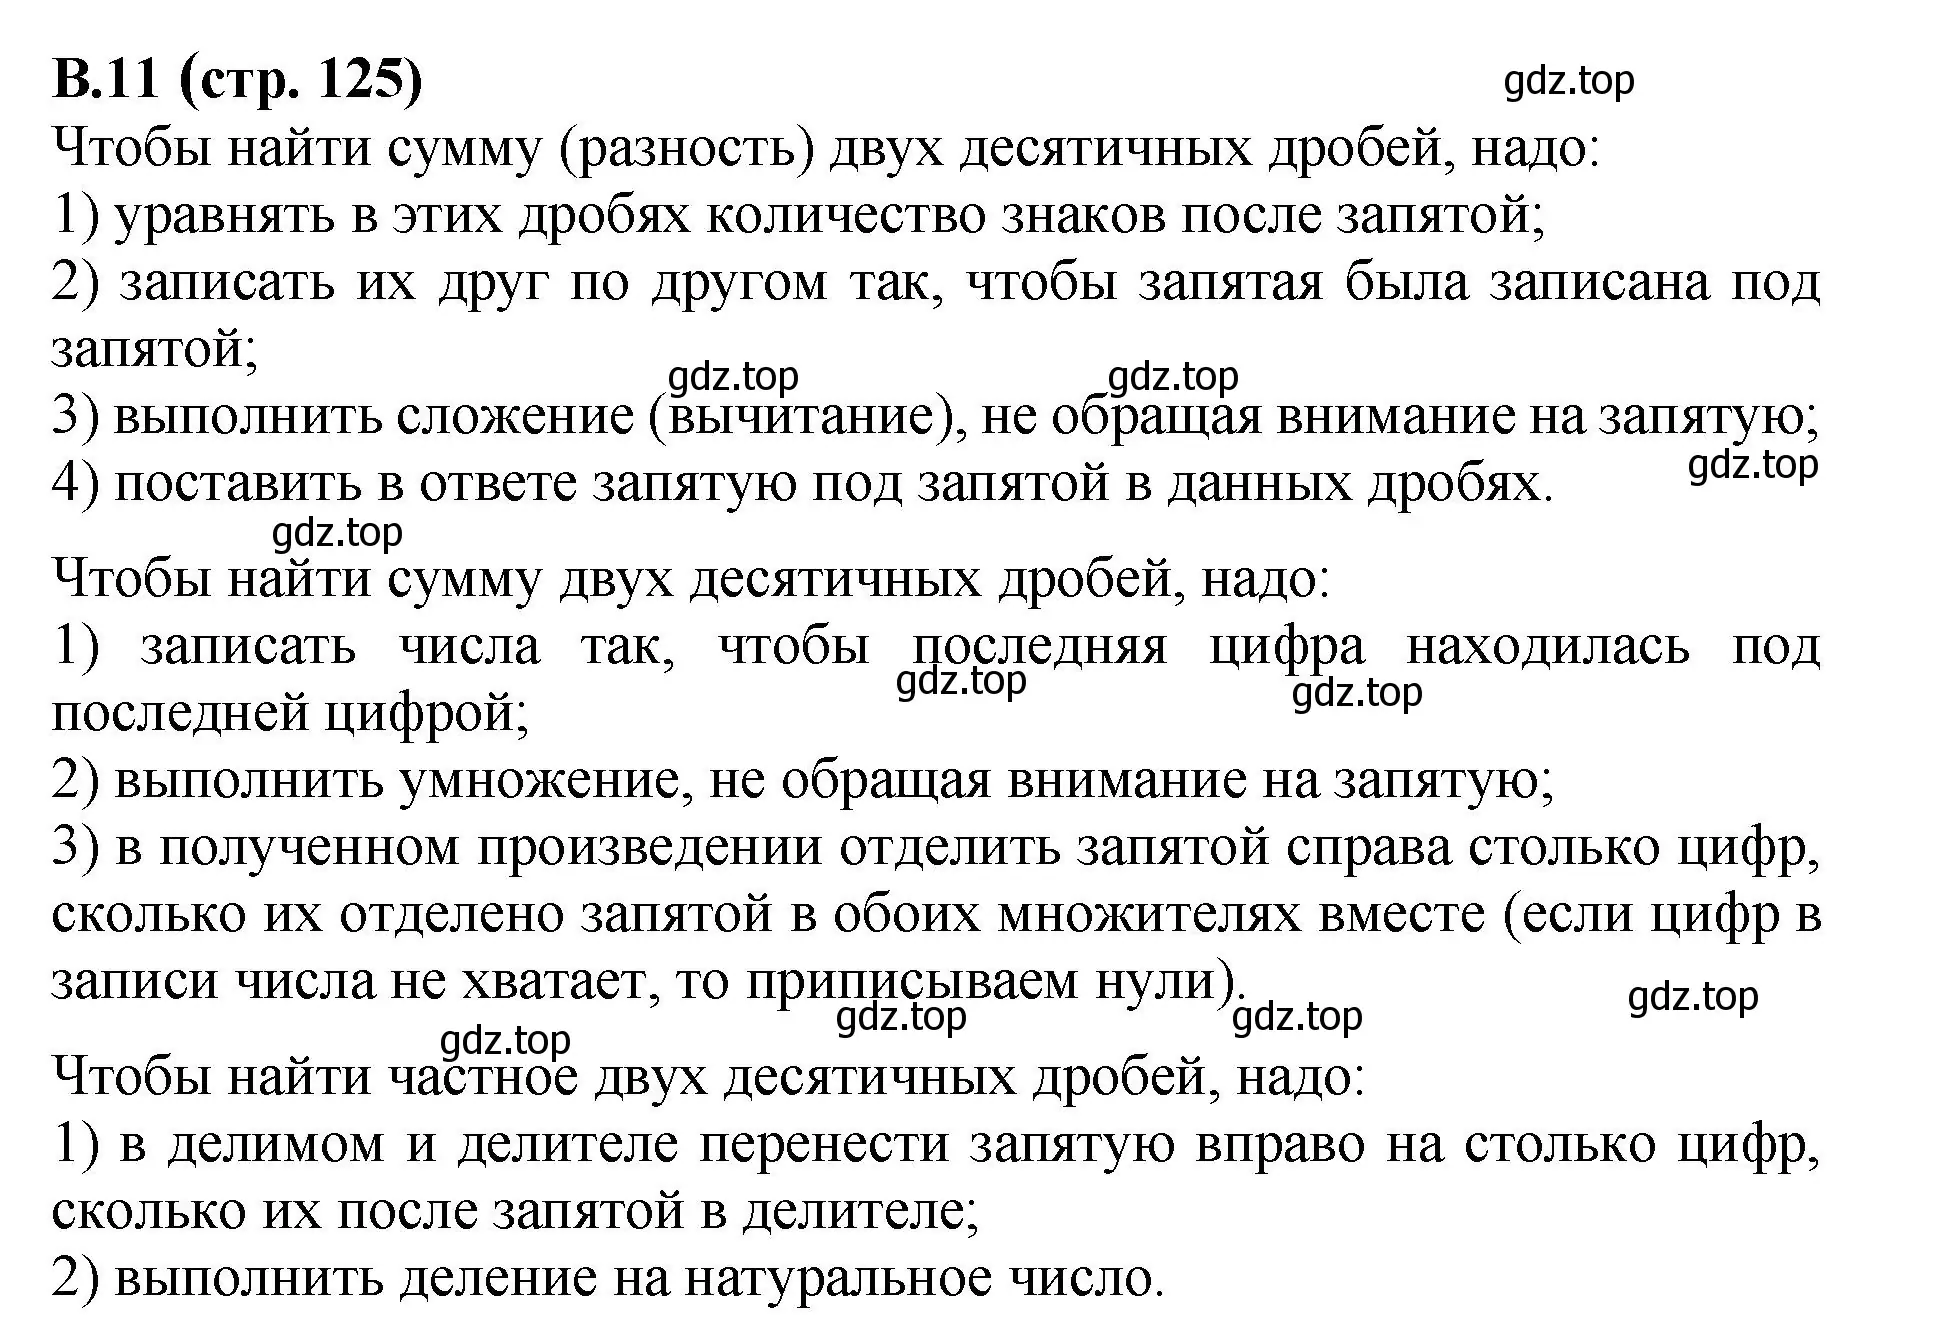 Решение номер 11 (страница 125) гдз по математике 6 класс Виленкин, Жохов, учебник 2 часть